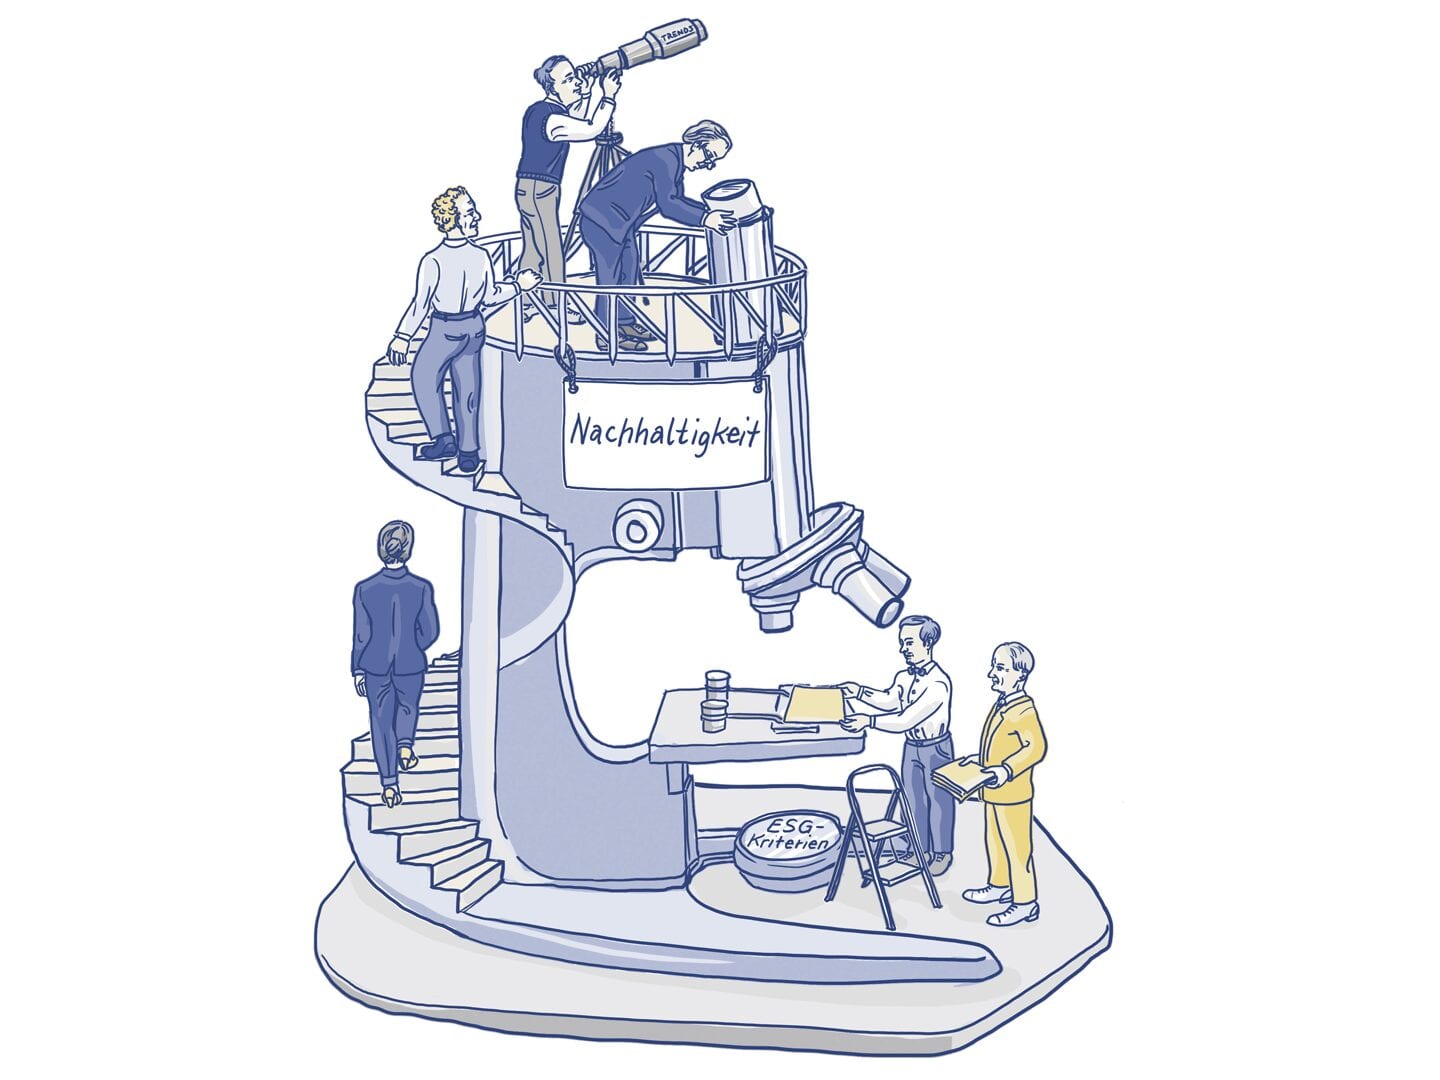 Illustration eines riesigen Mikroskops auf den Menschen stehen und ein Schild mit Nachhaltigkeit